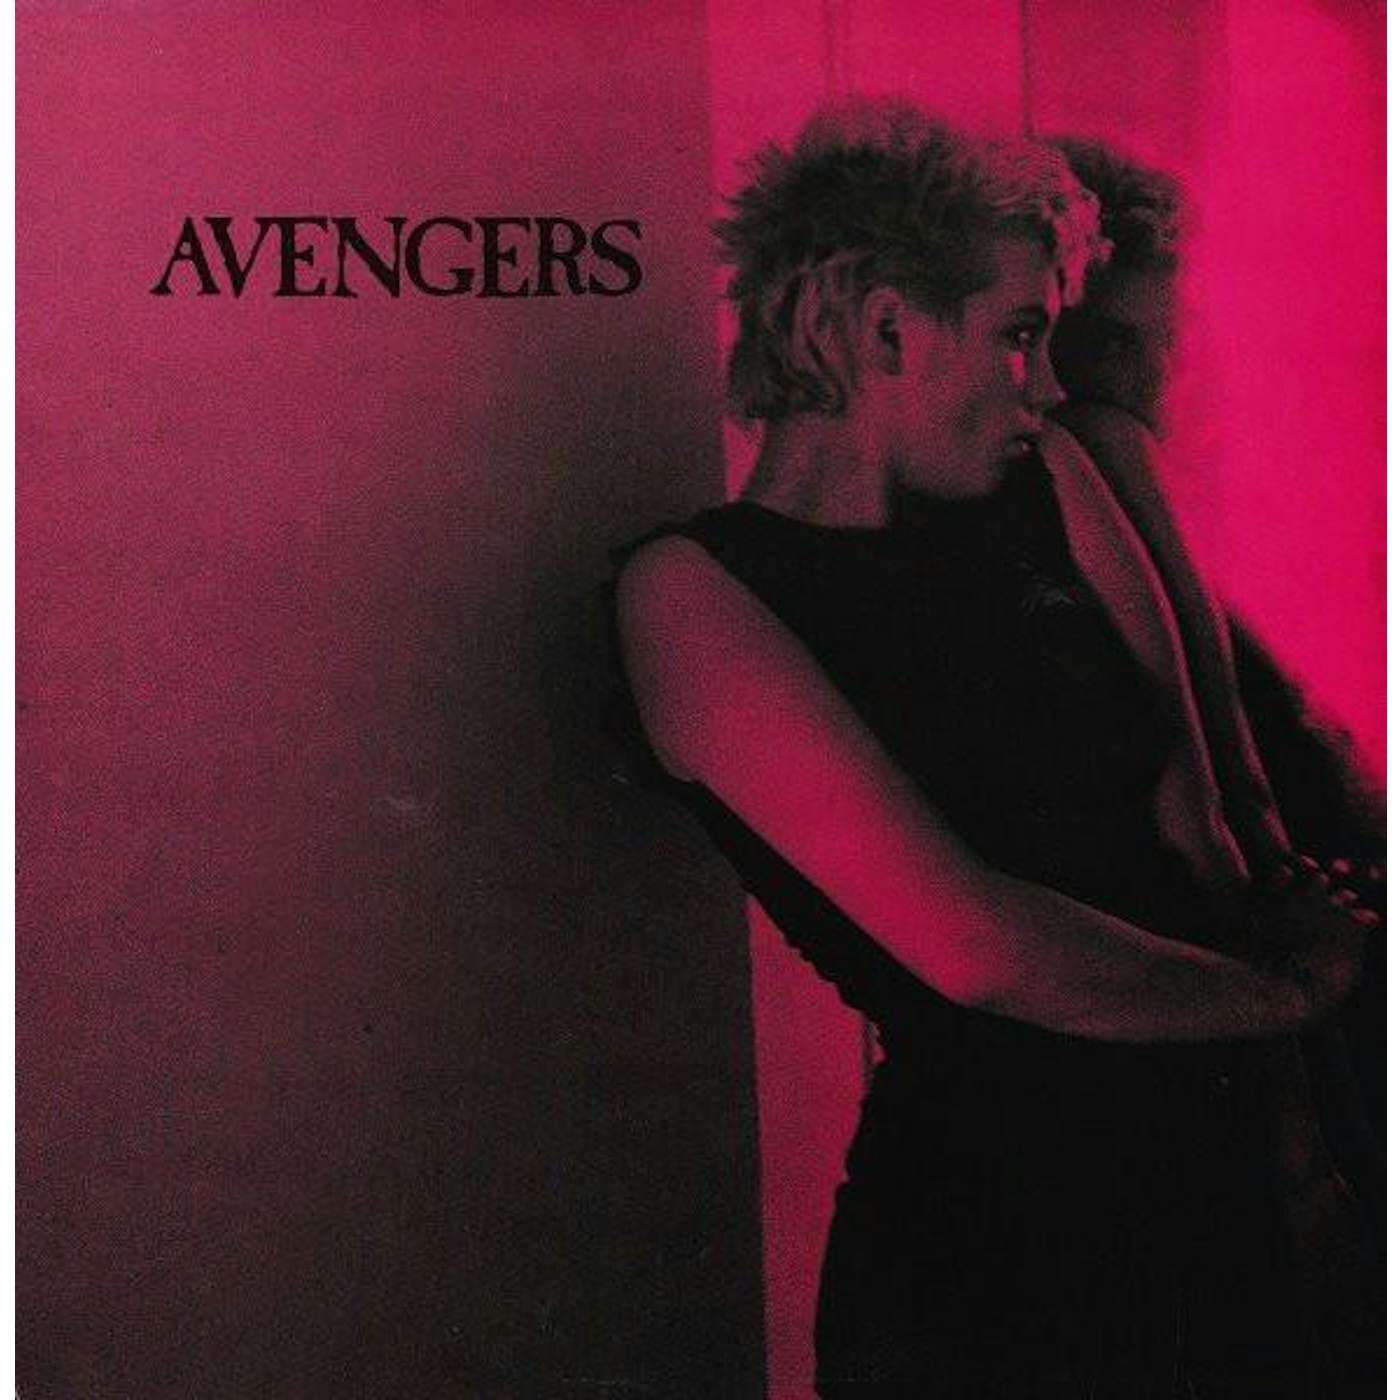 AVENGERS (LTD) (Vinyl)